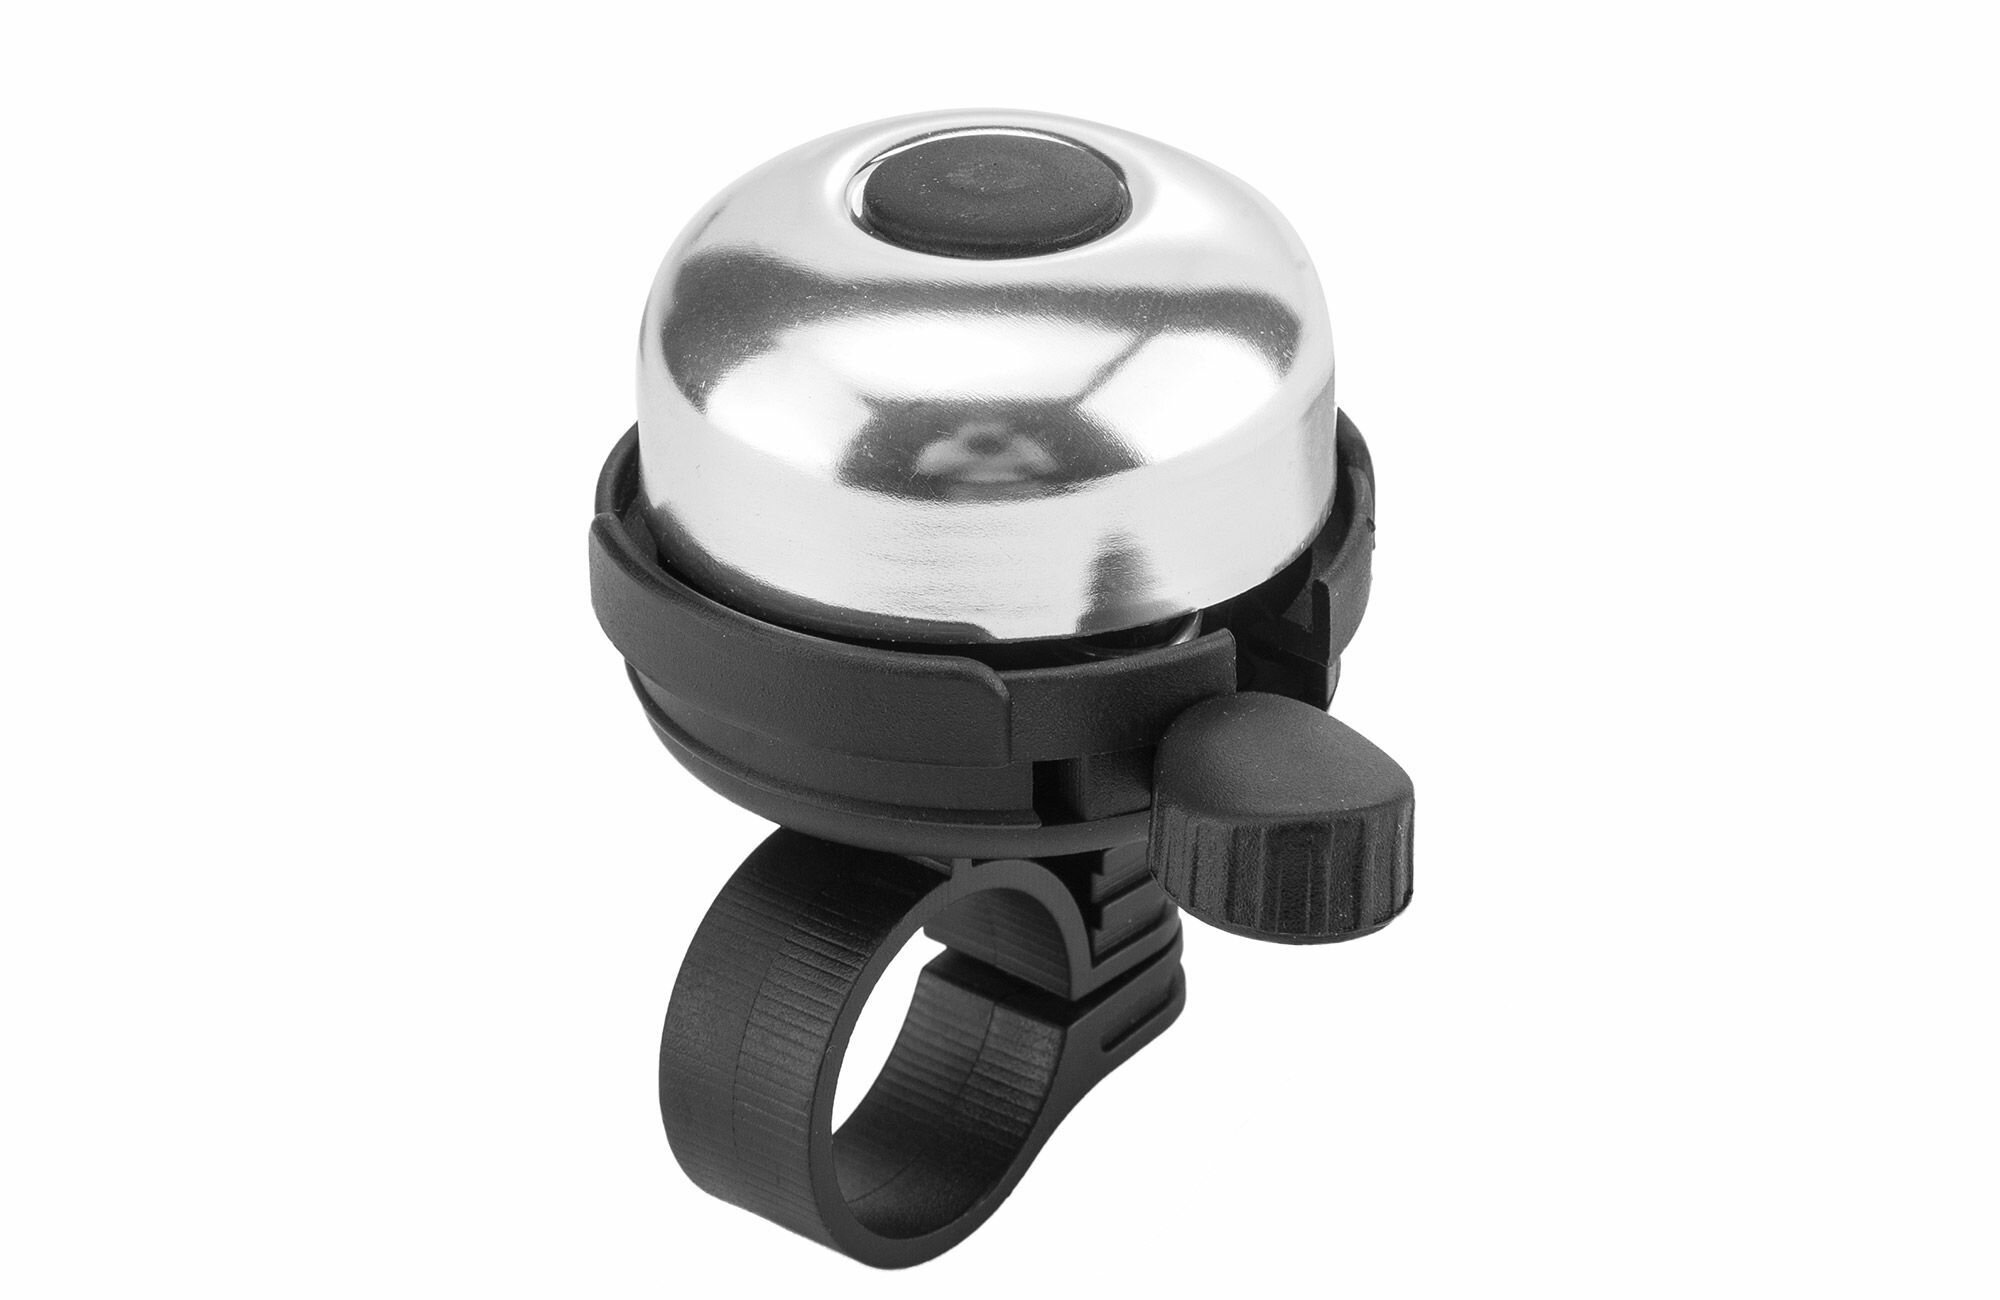 Звонок велосипедный XN-040/CO3 алюминий/пластик, чёрно-серебристый (P.310-450) 40 мм NEW